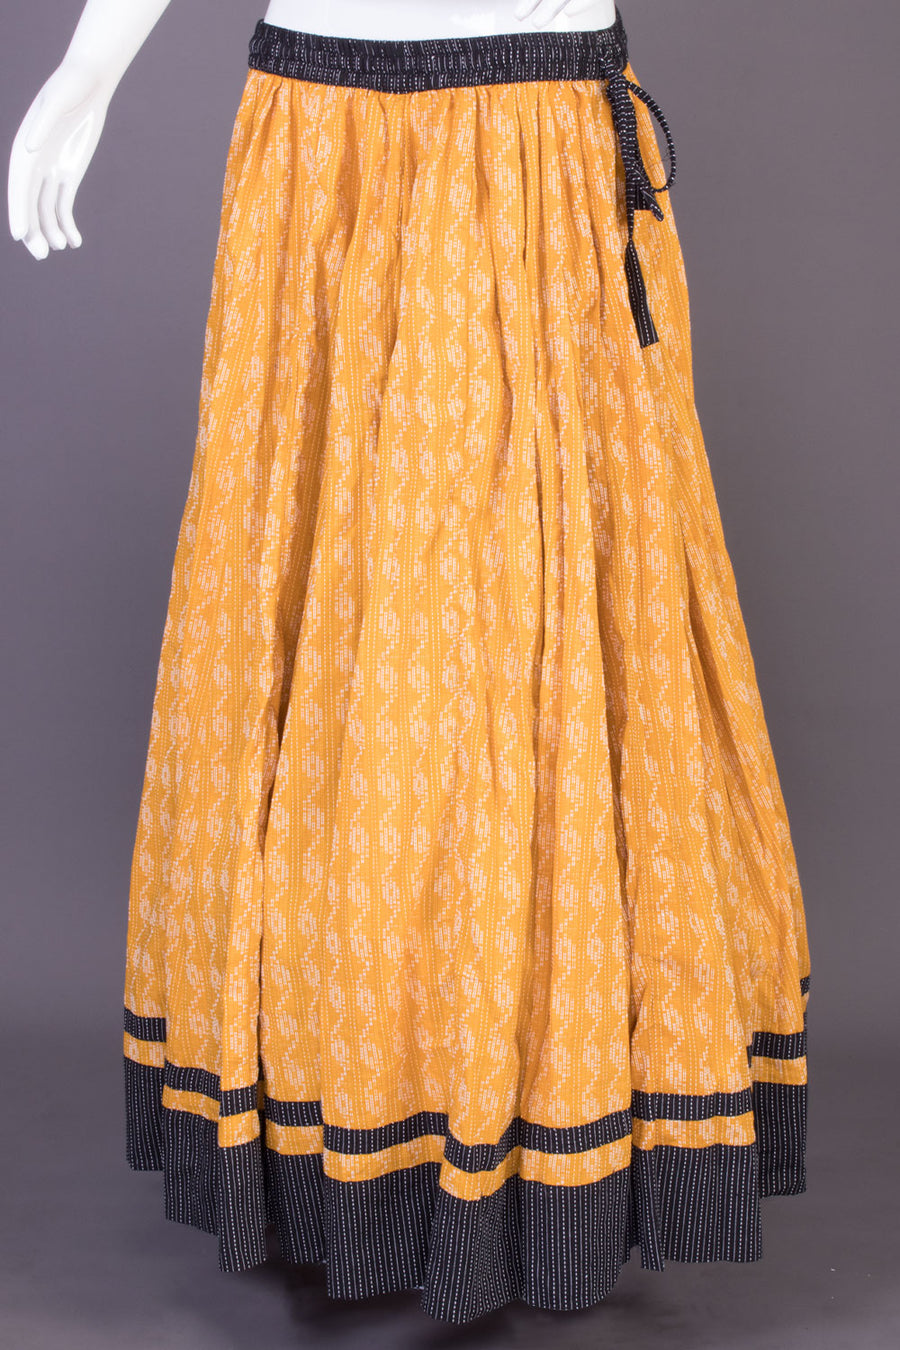 Orange Hand Block Printed Cotton Skirt  - Avishya